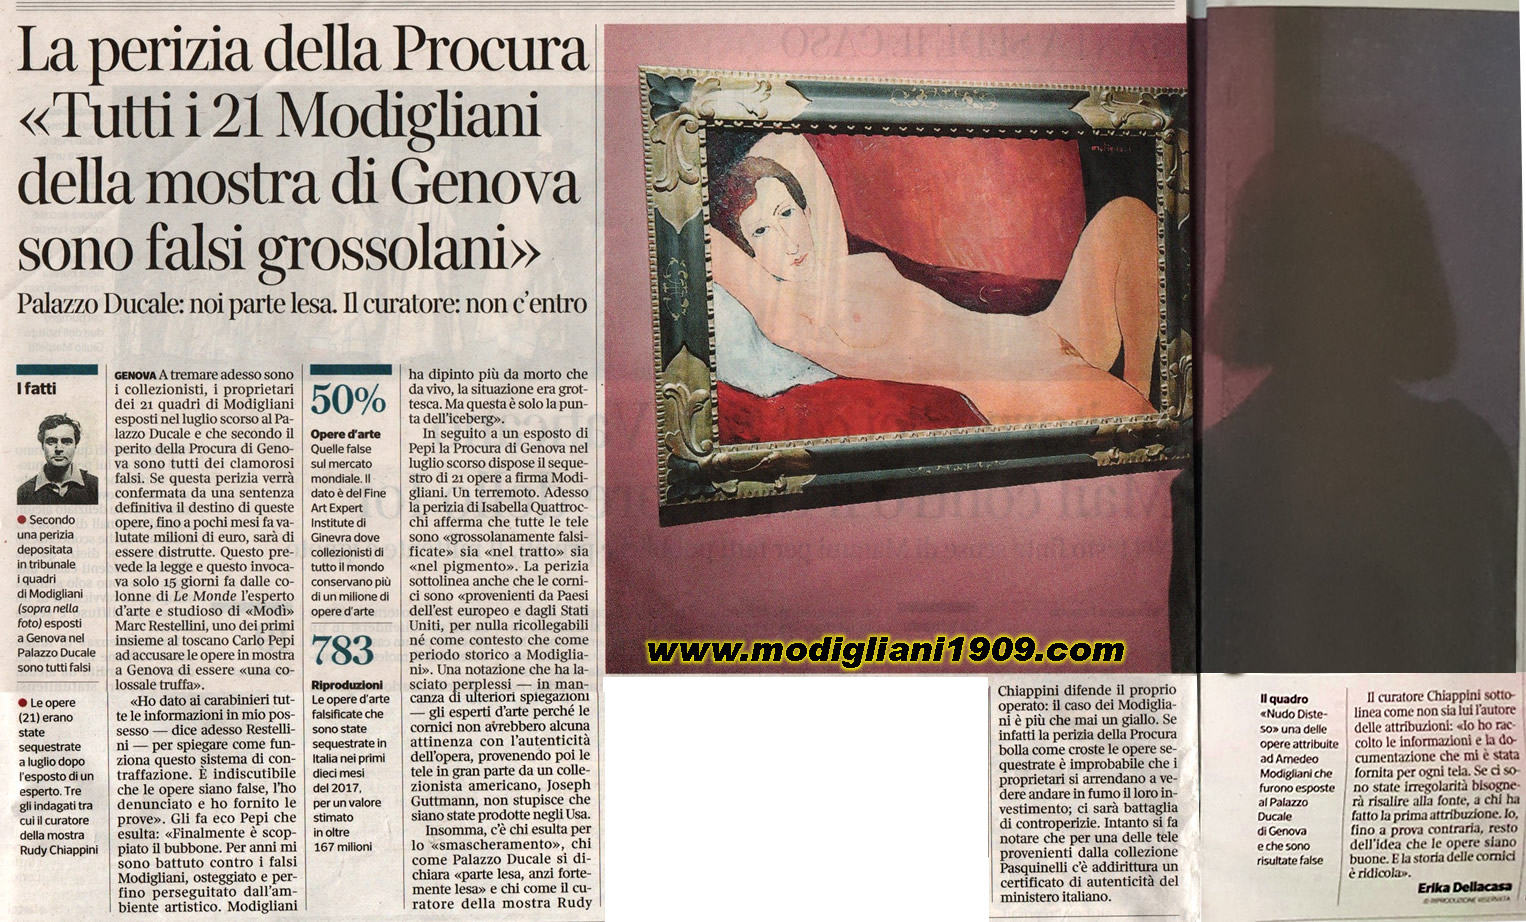 All 21 Modigliani of the Genoa exhibition are crude fake»- Il Corriere della Sera